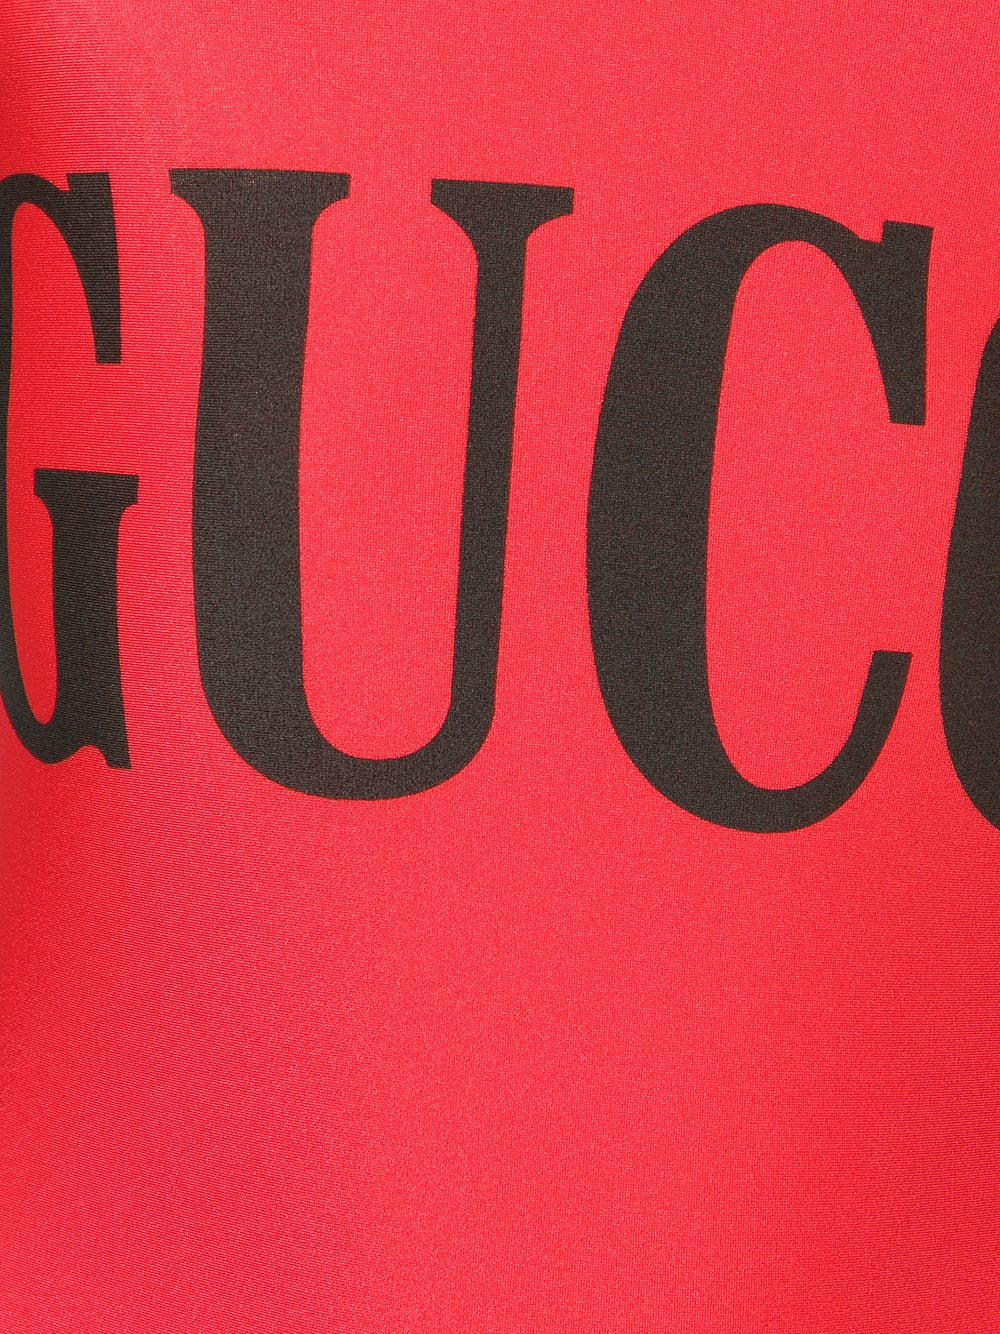 фото Gucci слитный купальник с логотипом